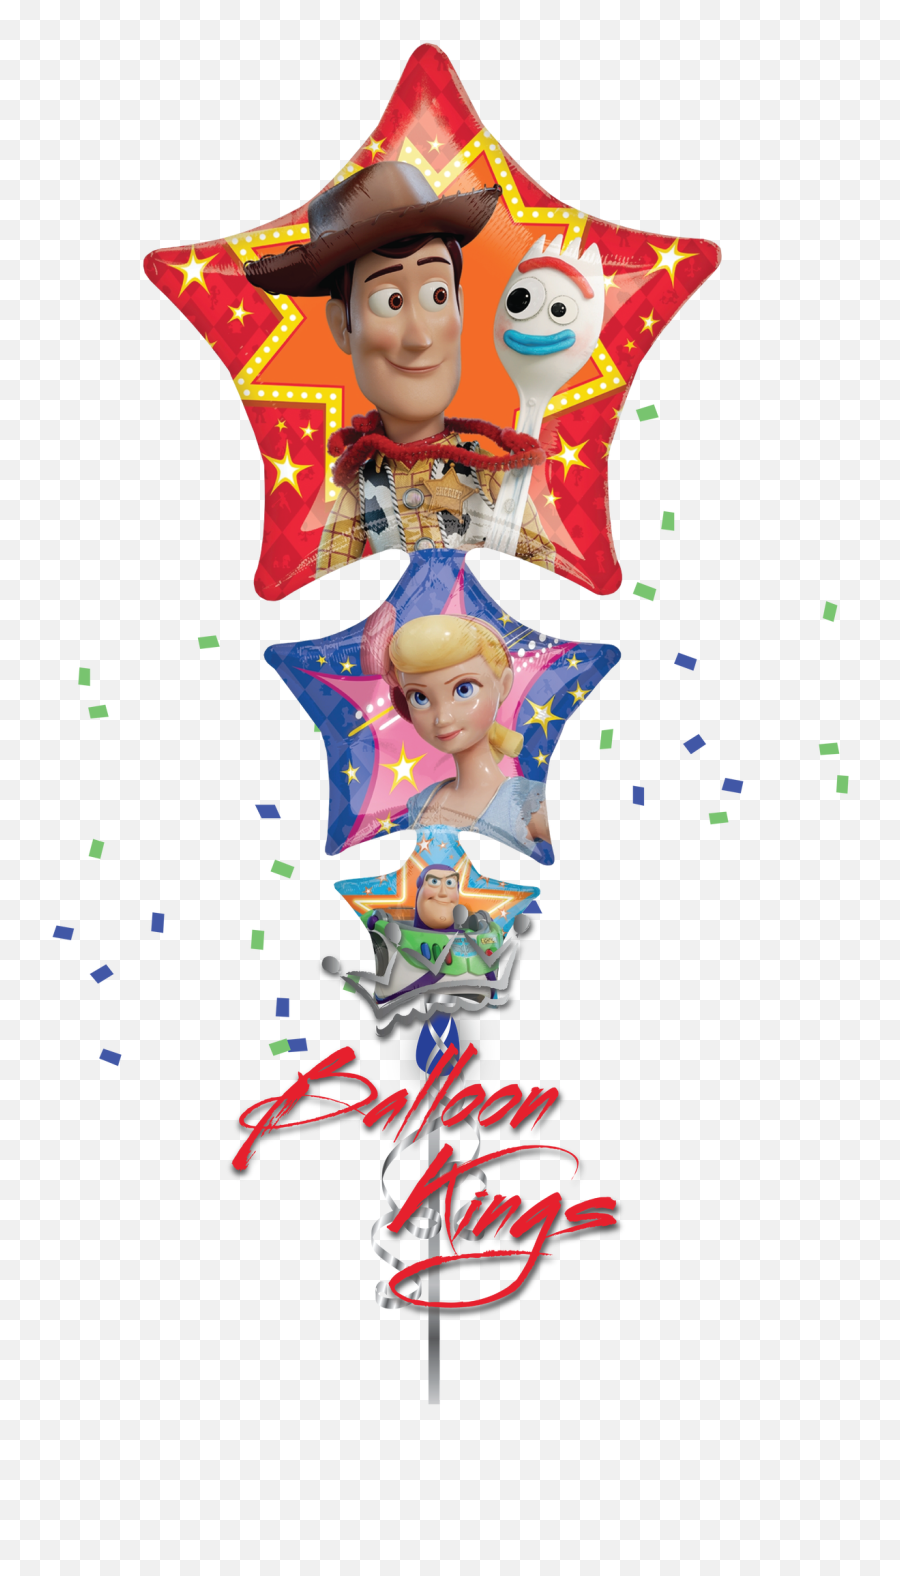 Toy Story 4 - Balloon Emoji,Toy Story 4 Logo